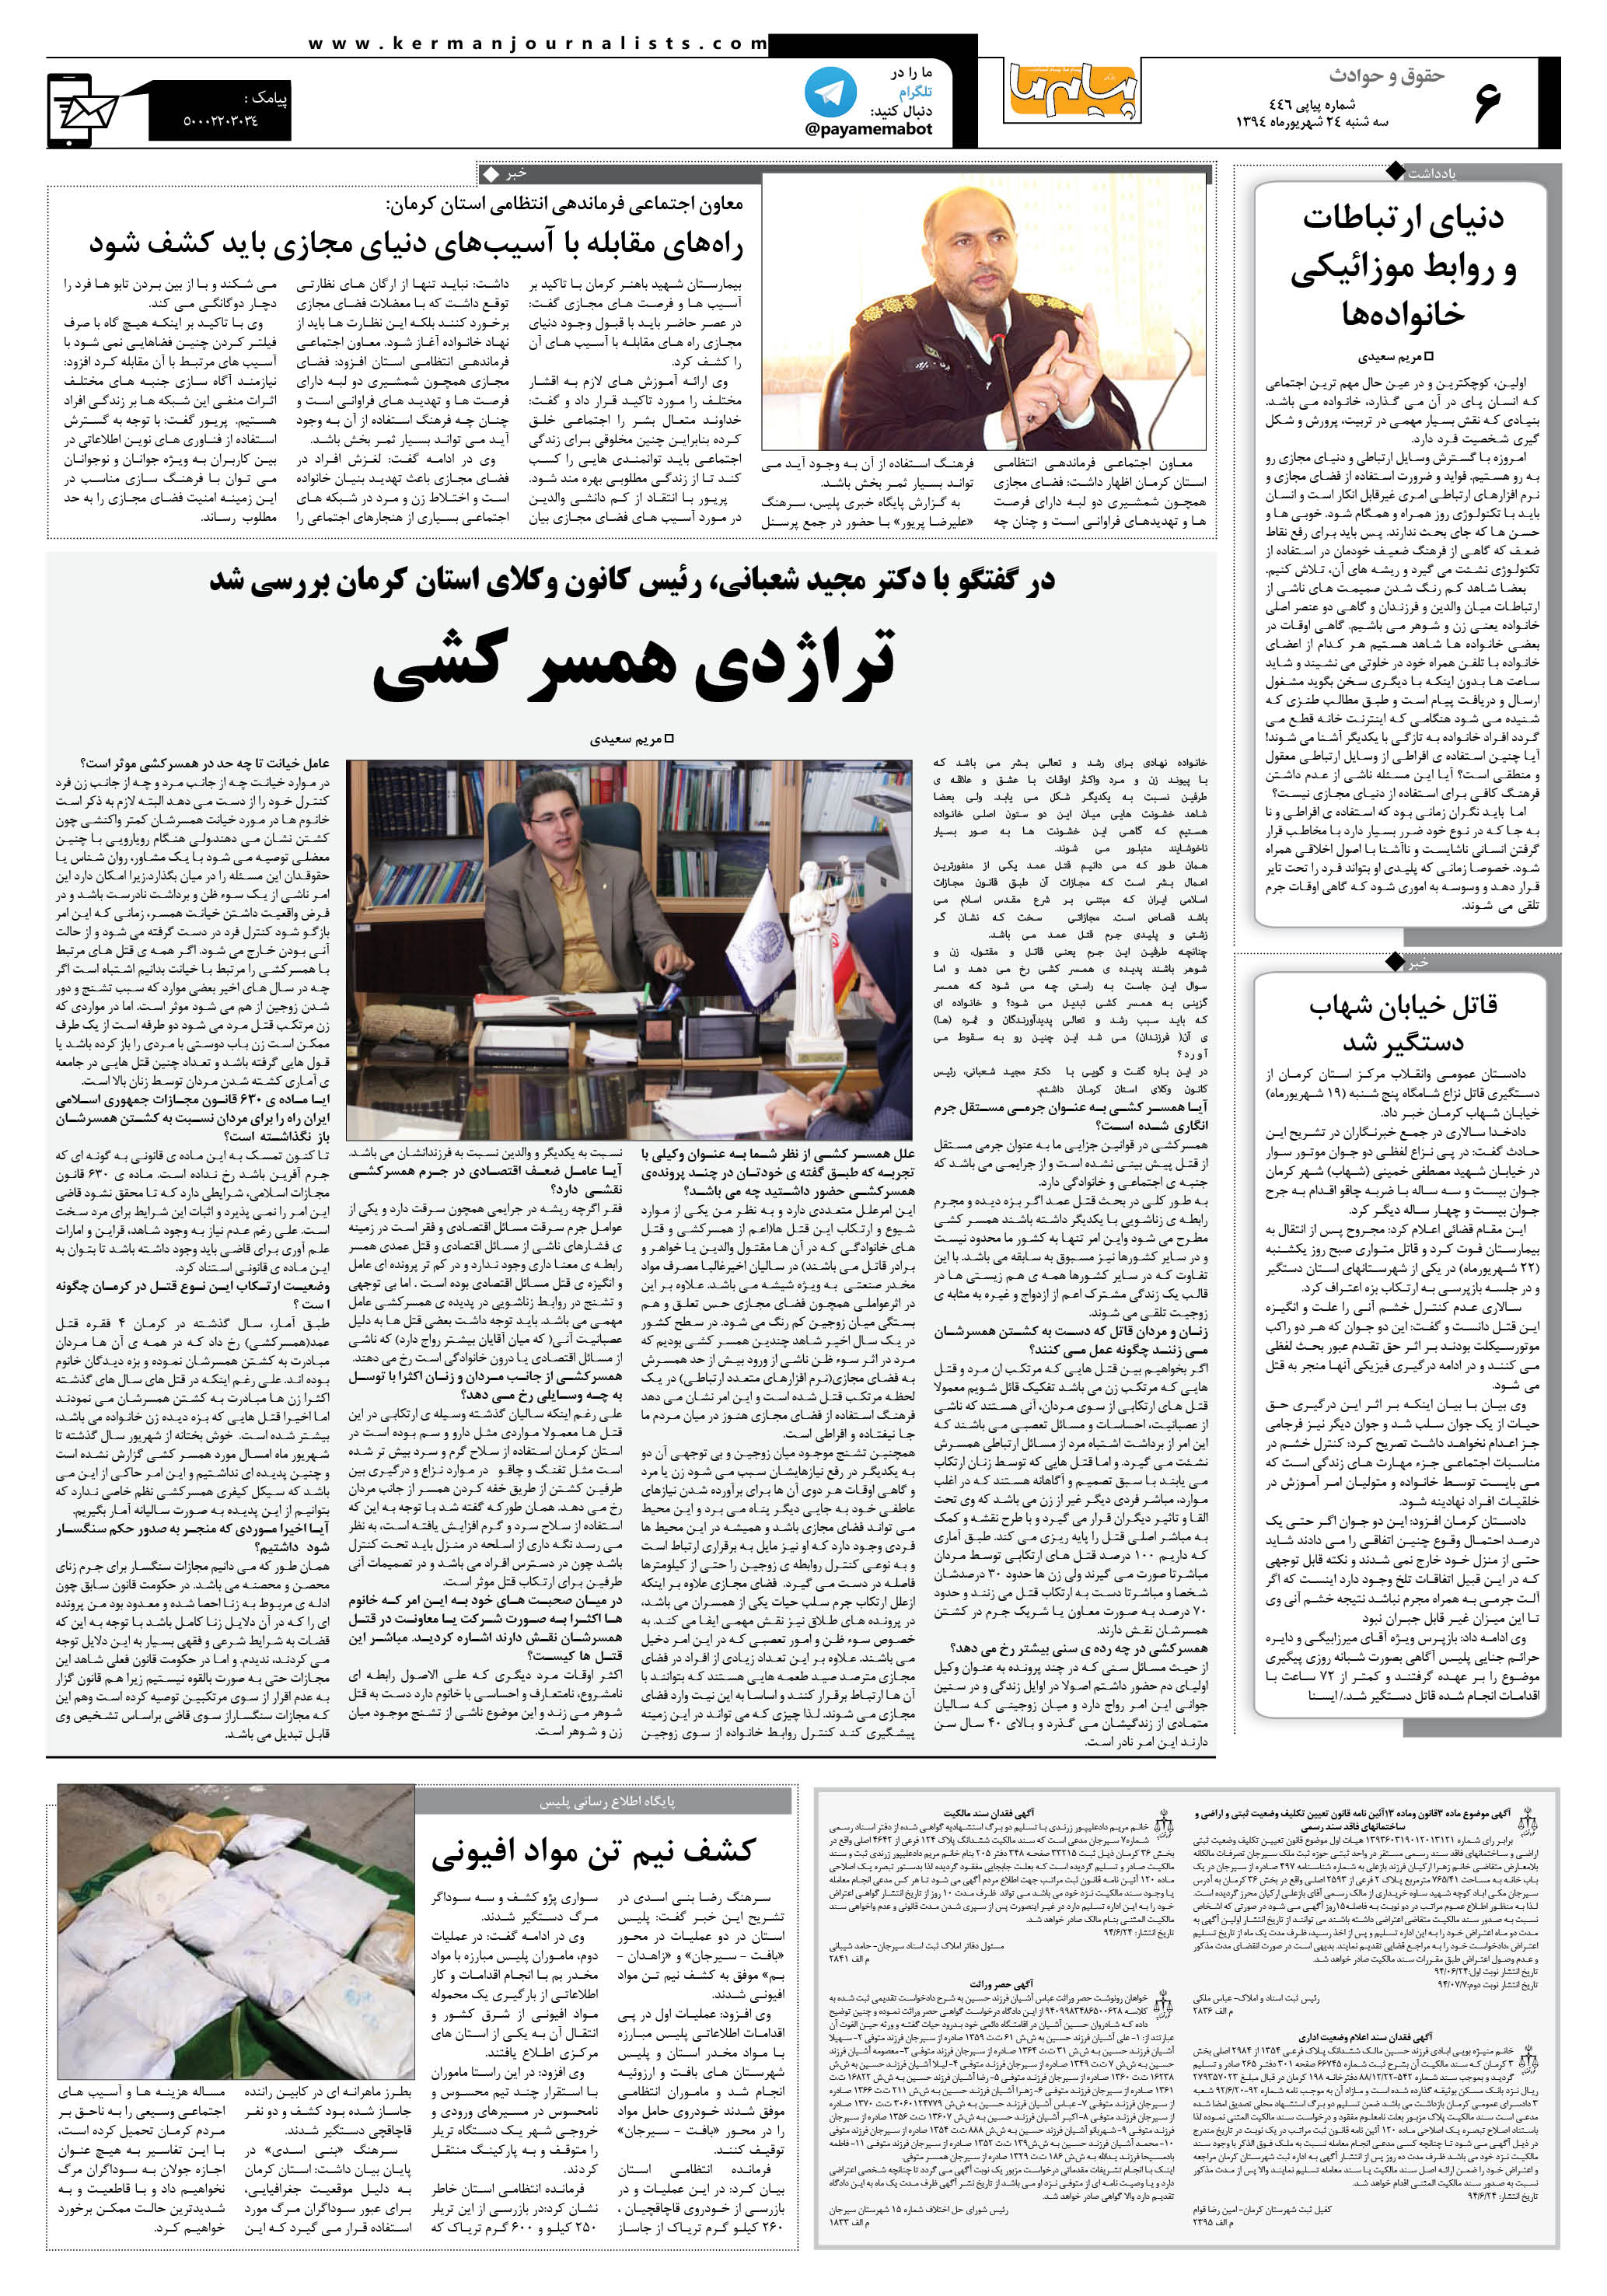 صفحه حقوق و حوادث شماره 446 روزنامه پیام ما